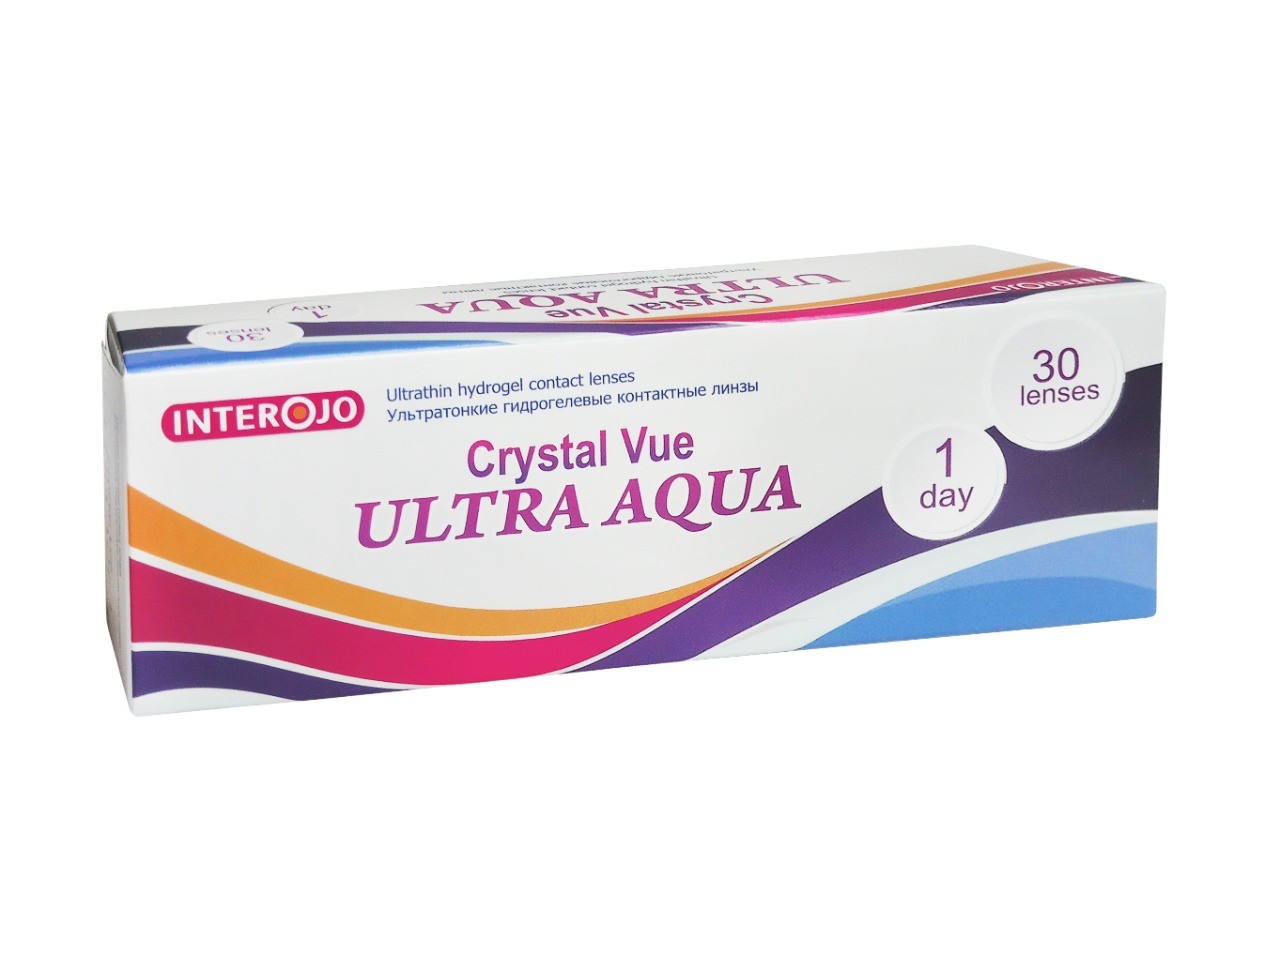 Crystal Vue 1-day ULTRA AQUA